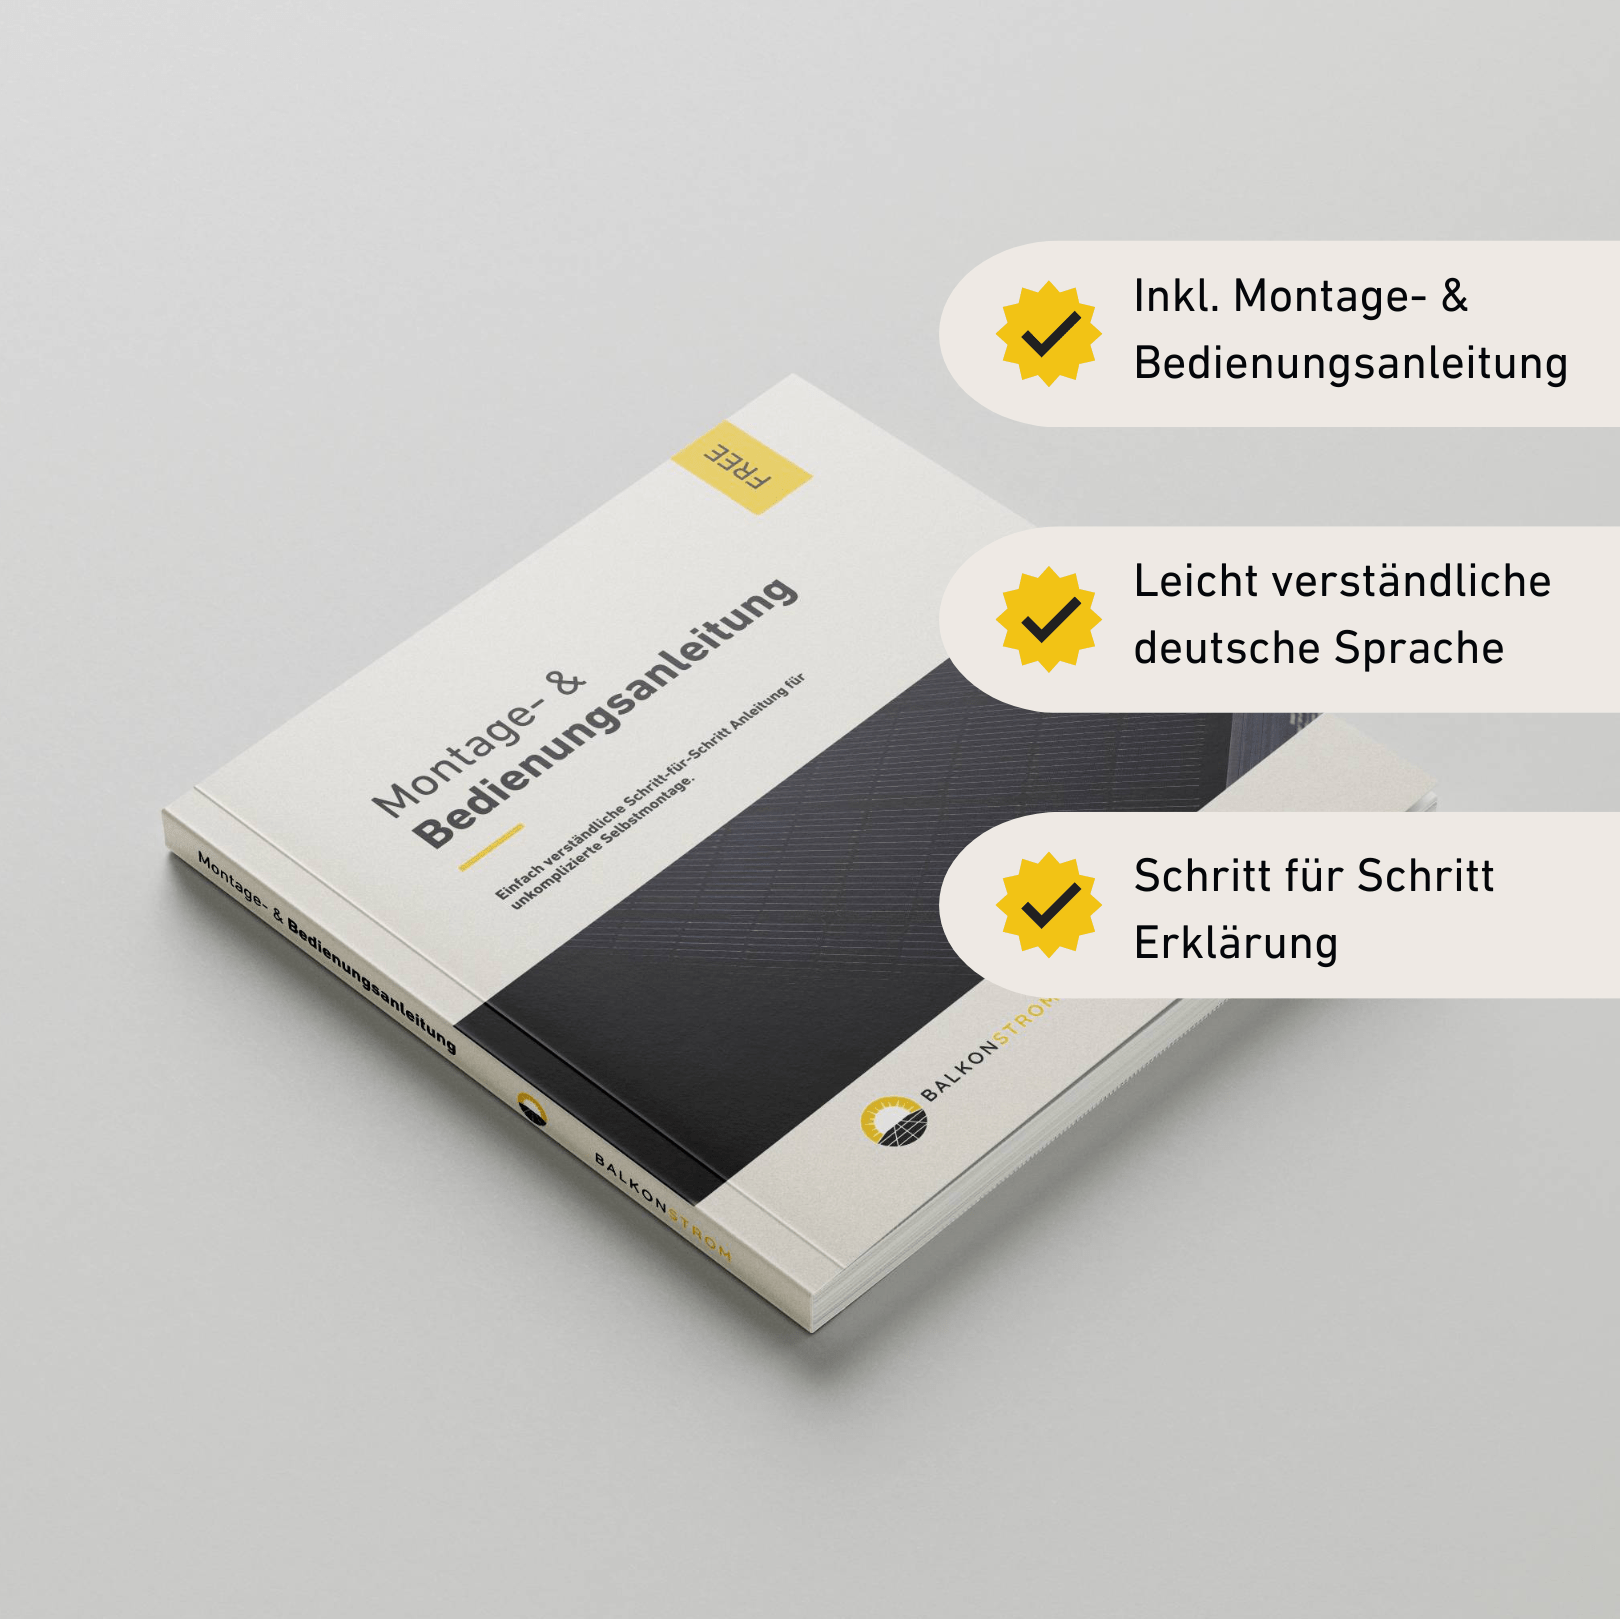 Balkonstrom Montage- und Bedienungsanleitung Buch auf weißem Hintergrund